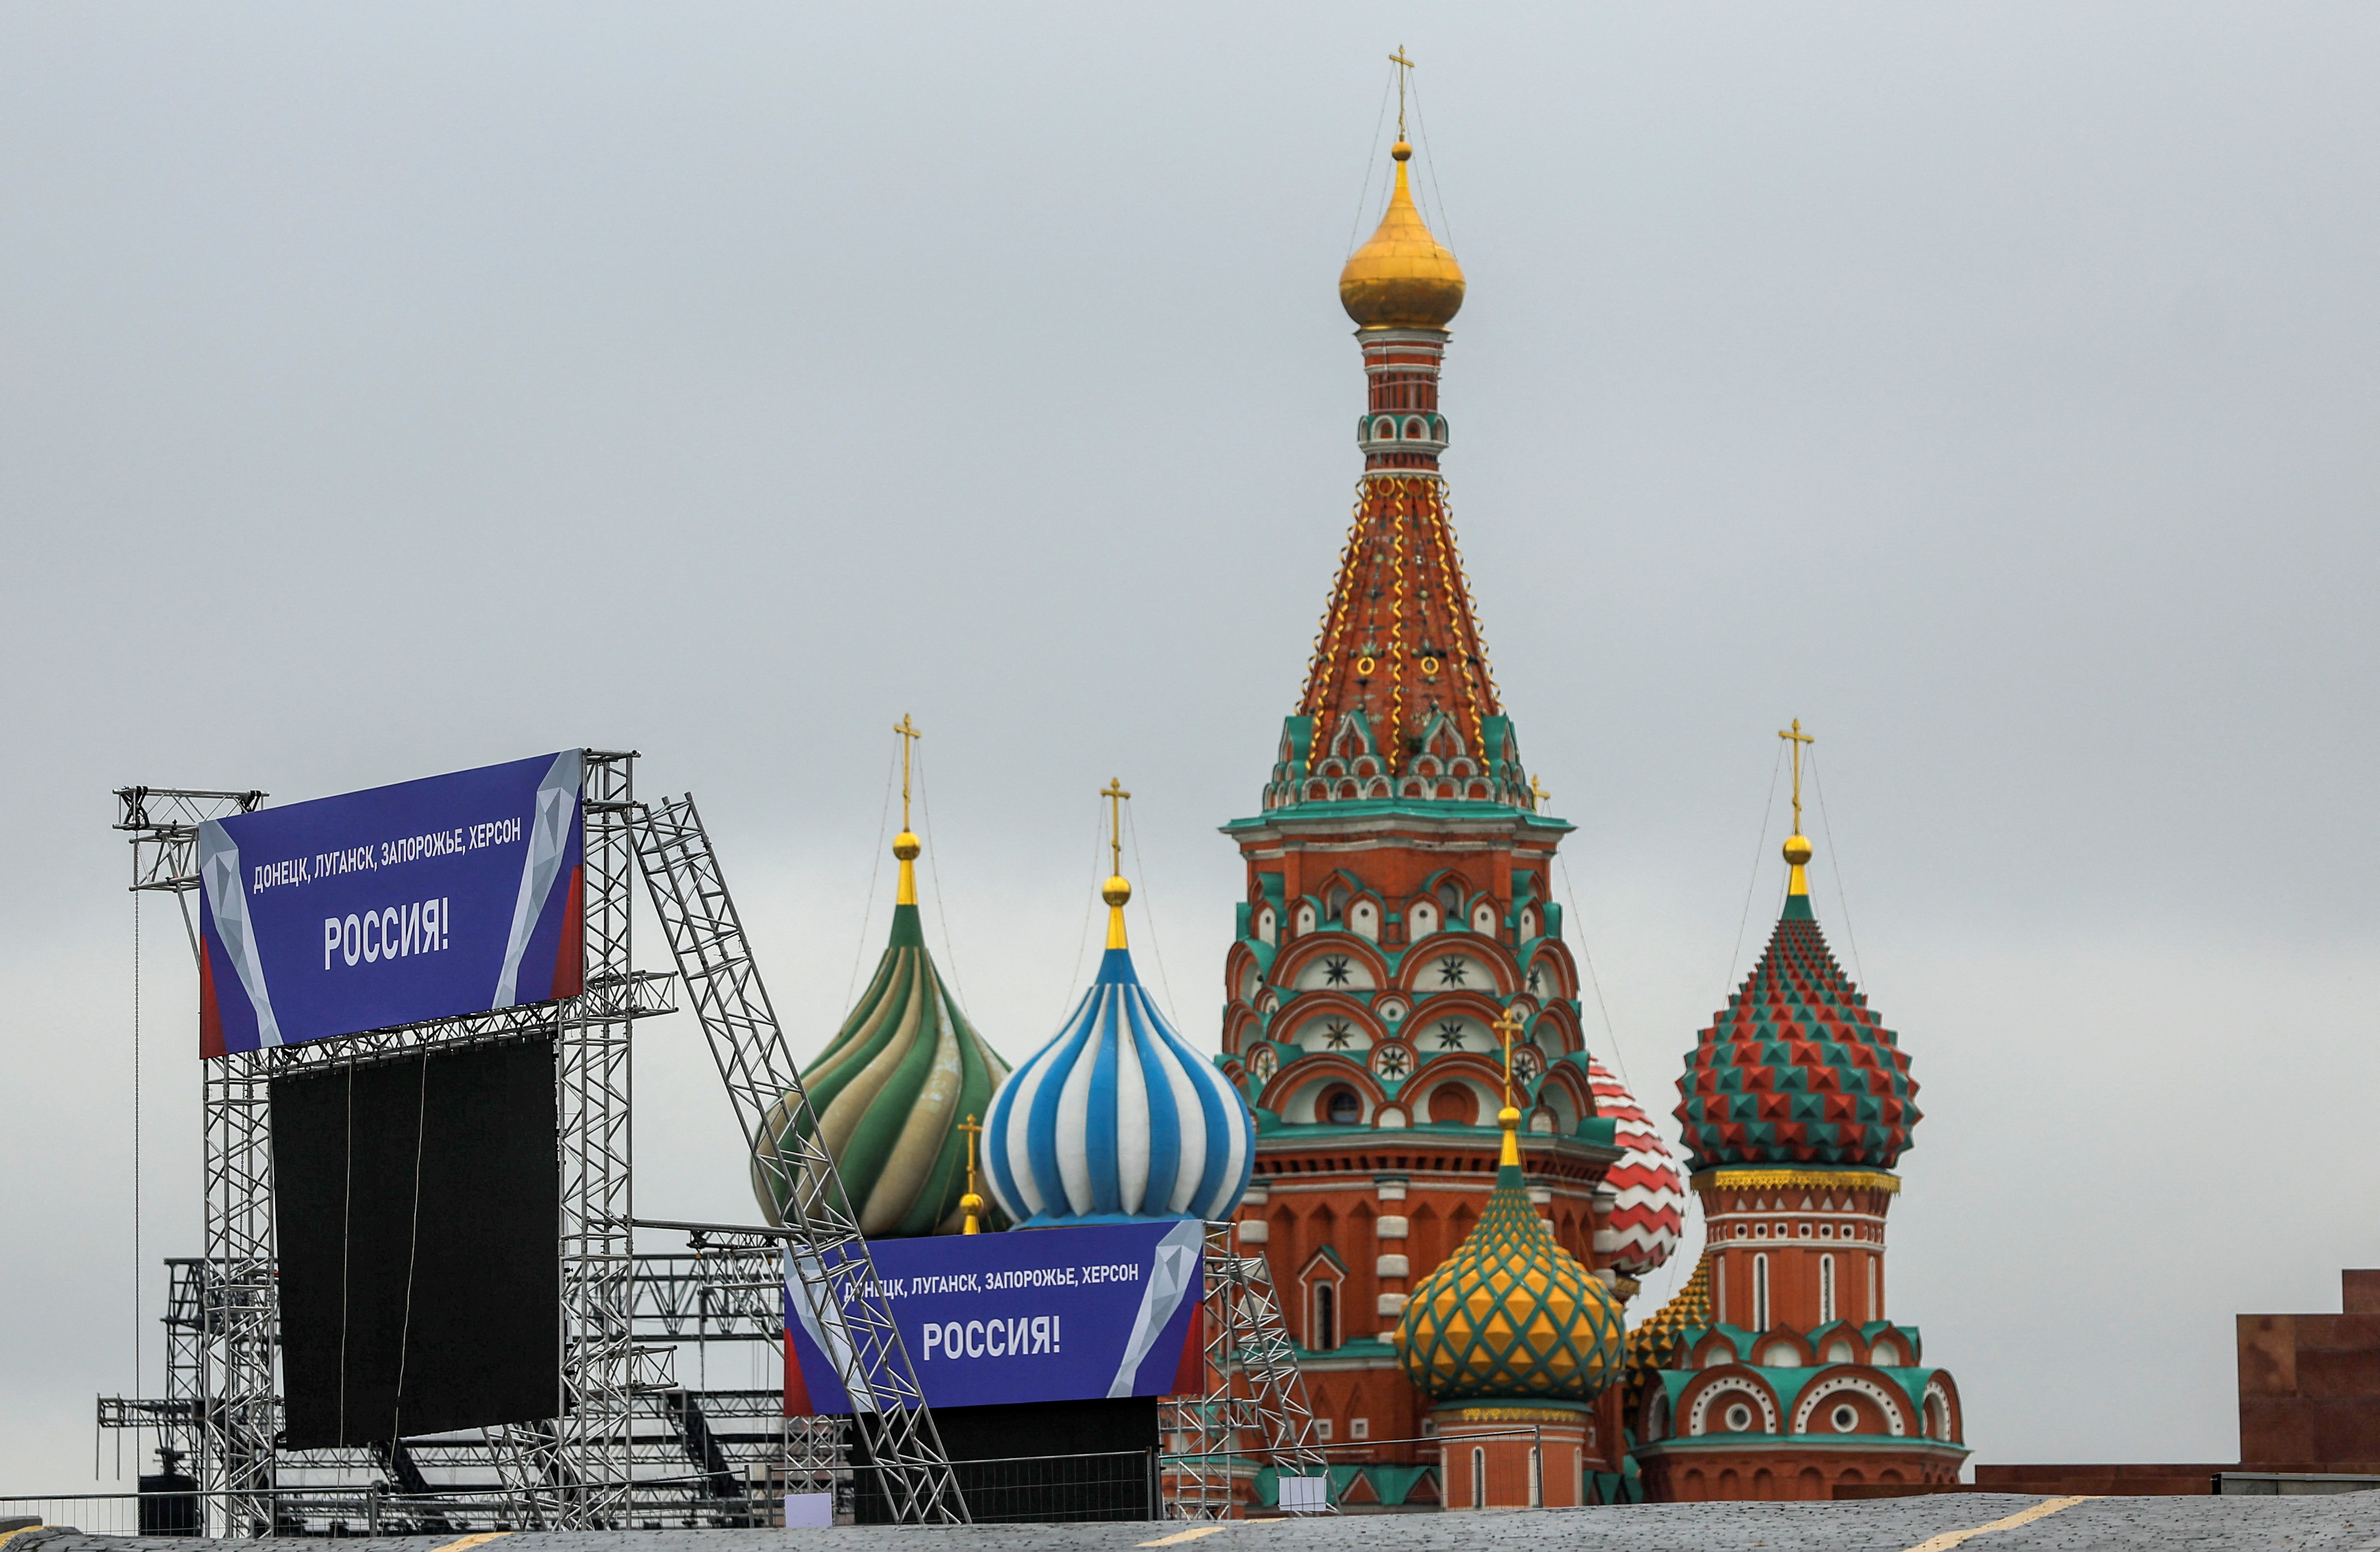 Một khung cảnh cho thấy các biểu ngữ và công trình xây dựng một sân khấu ở Quảng trường Đỏ ở Moscow